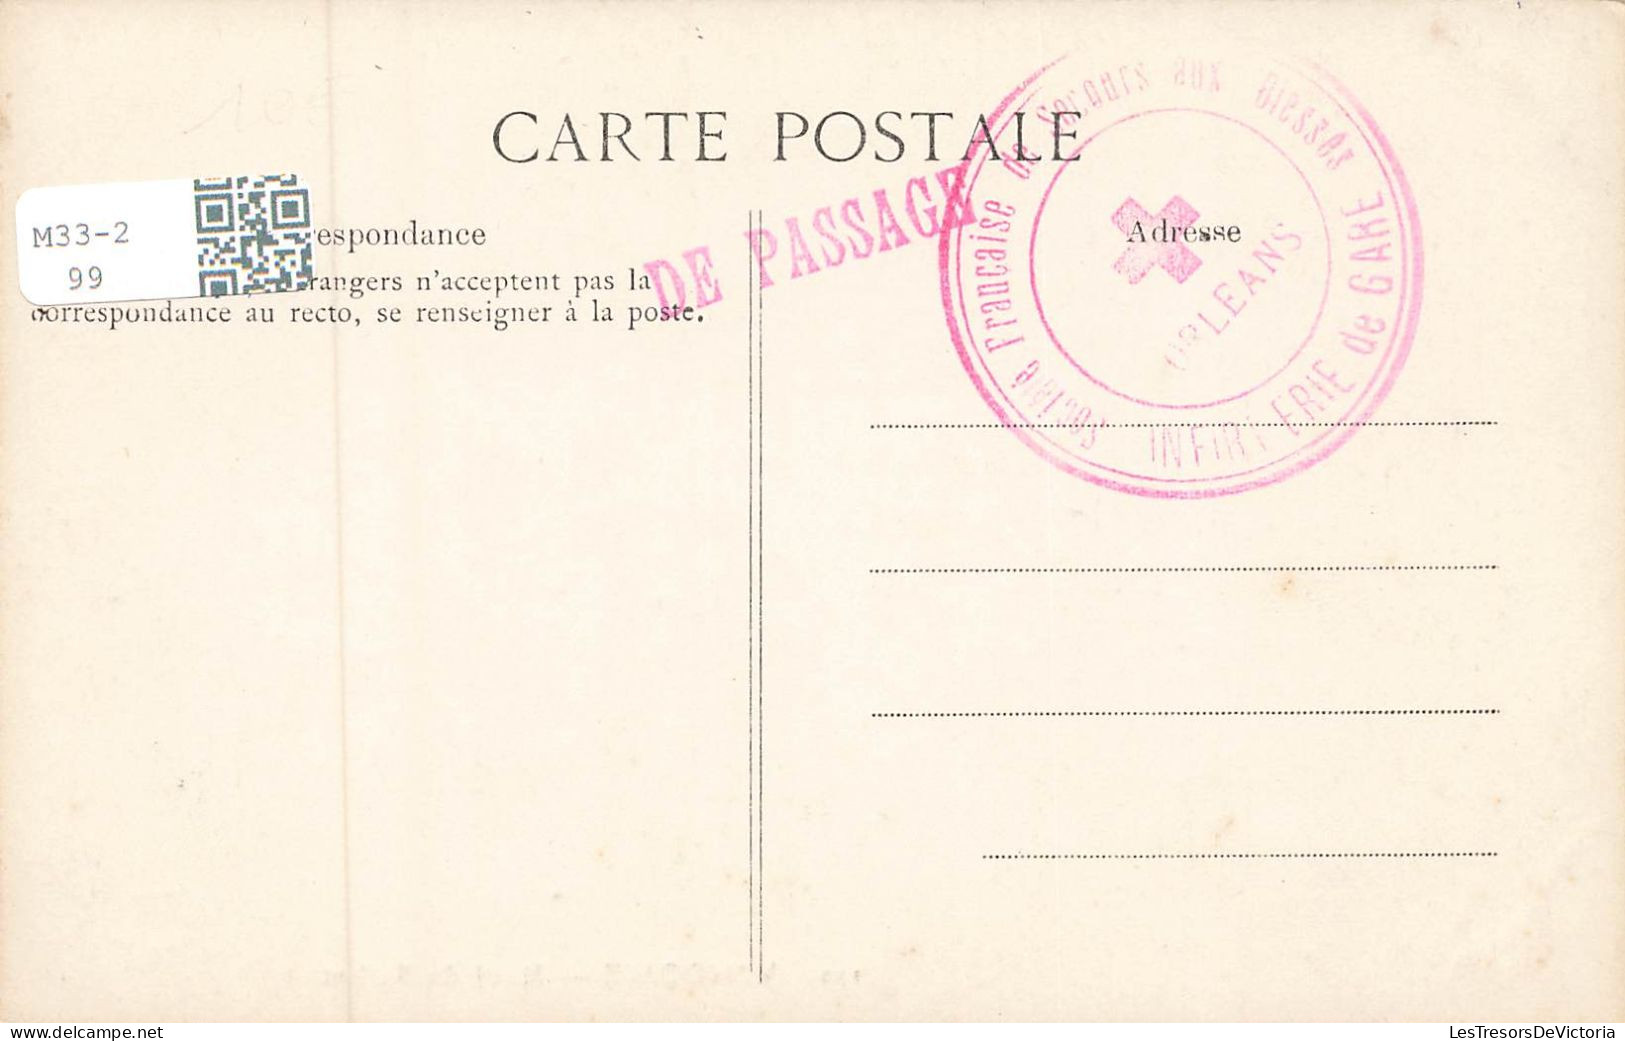 FRANCE - Vendome - Bords Du Saillant - Maions Sur Le Canal - Carte Postale Ancienne - Vendome